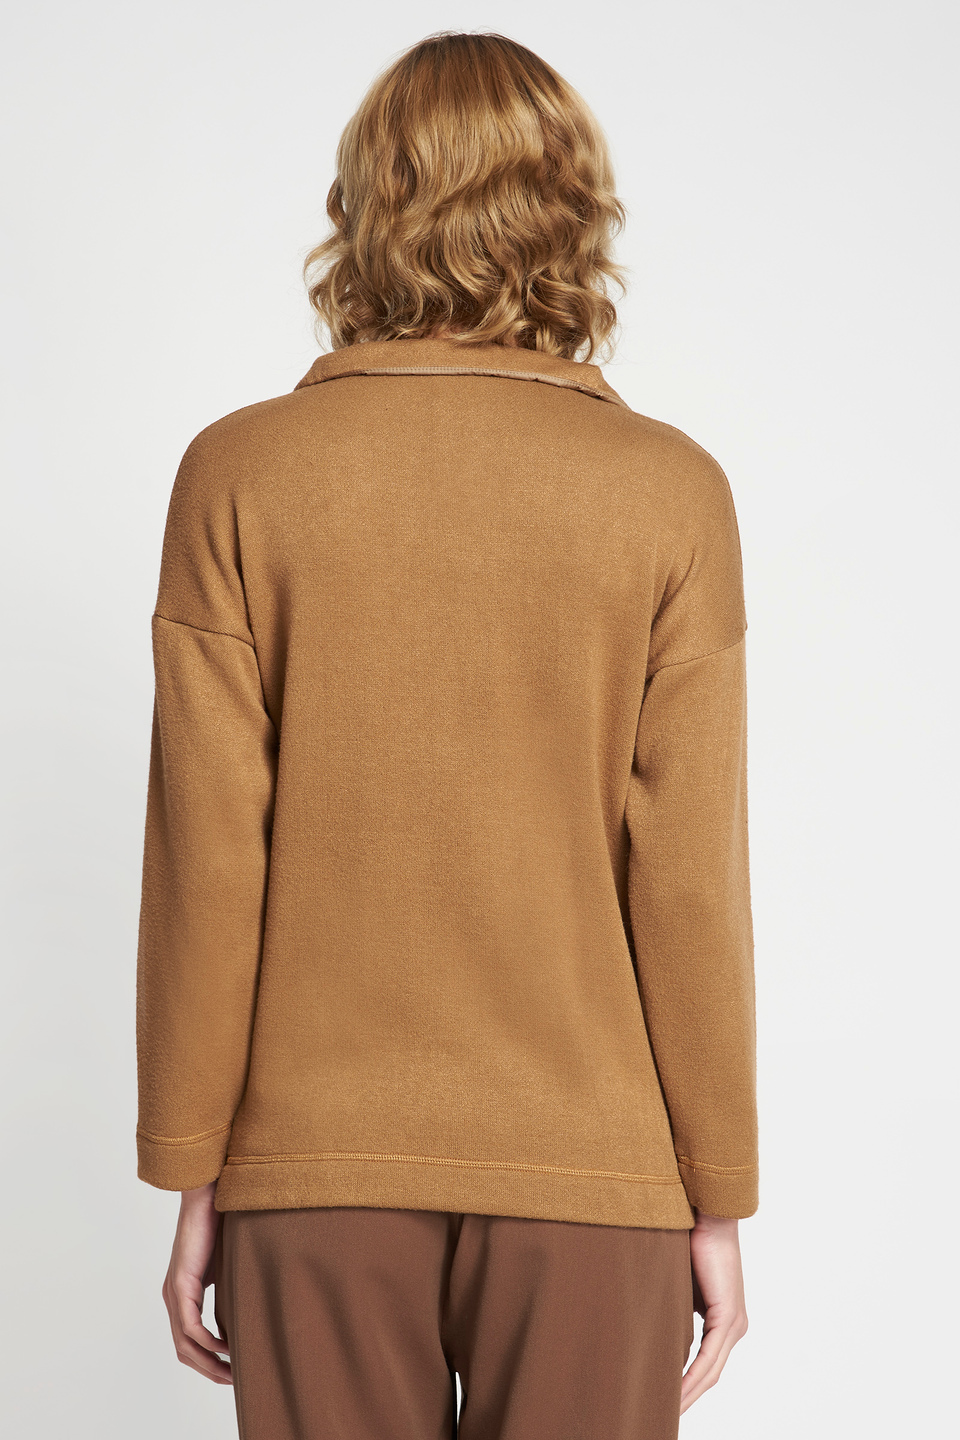 Synthetic fibre high-neck sweatshirt - La Martina - Official Online Shop